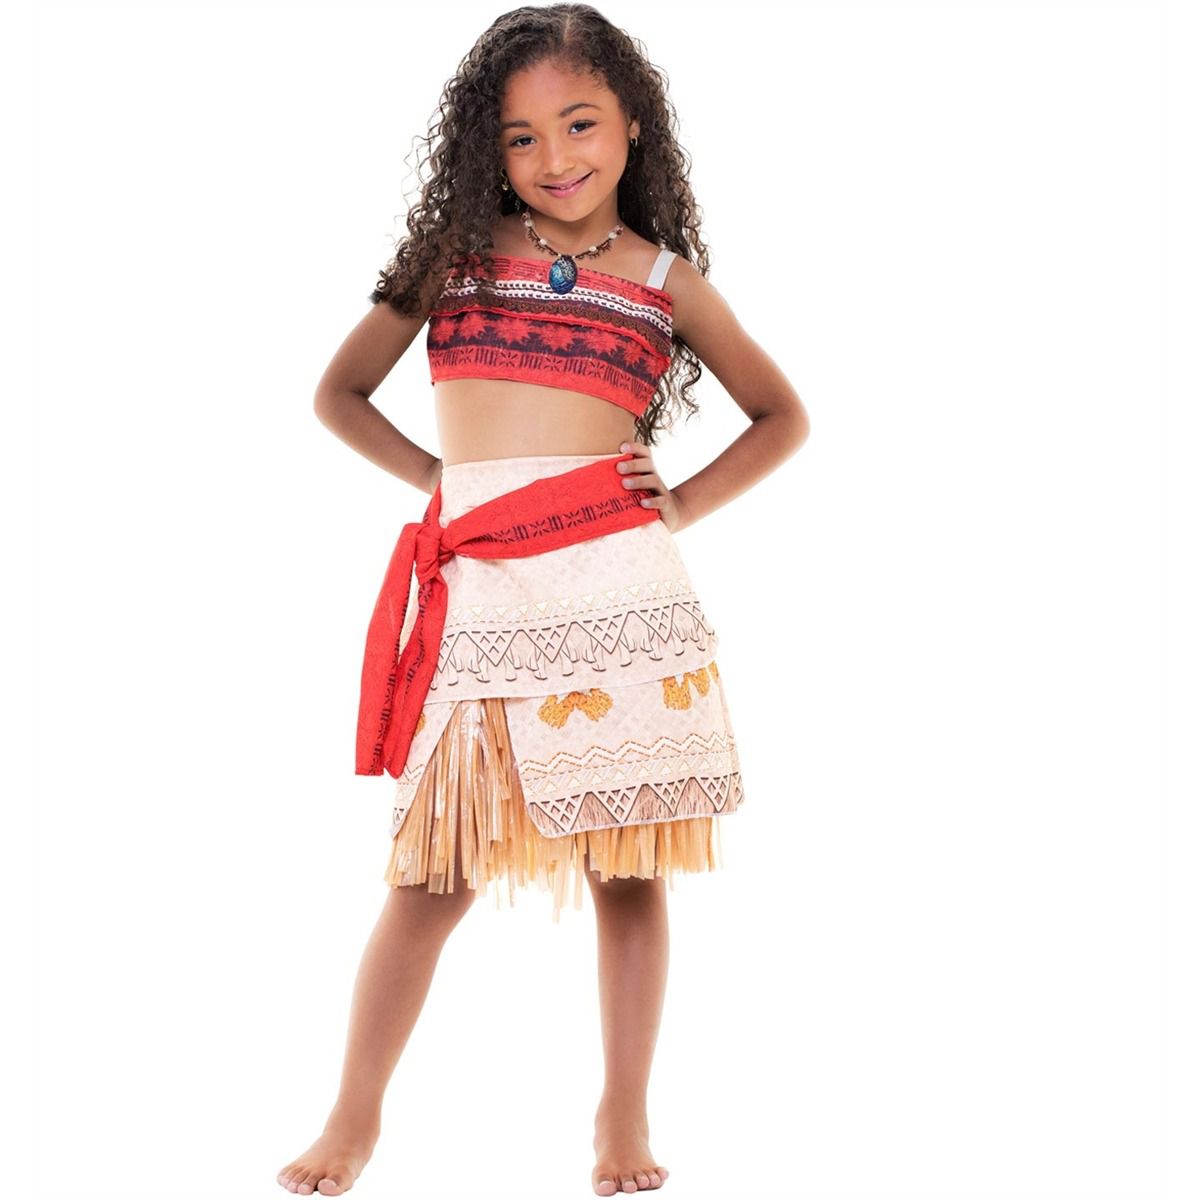 Fantasia Moana Infantil Vestido Original Disney com Colar - 7 Artes BrinQ  Fantasias